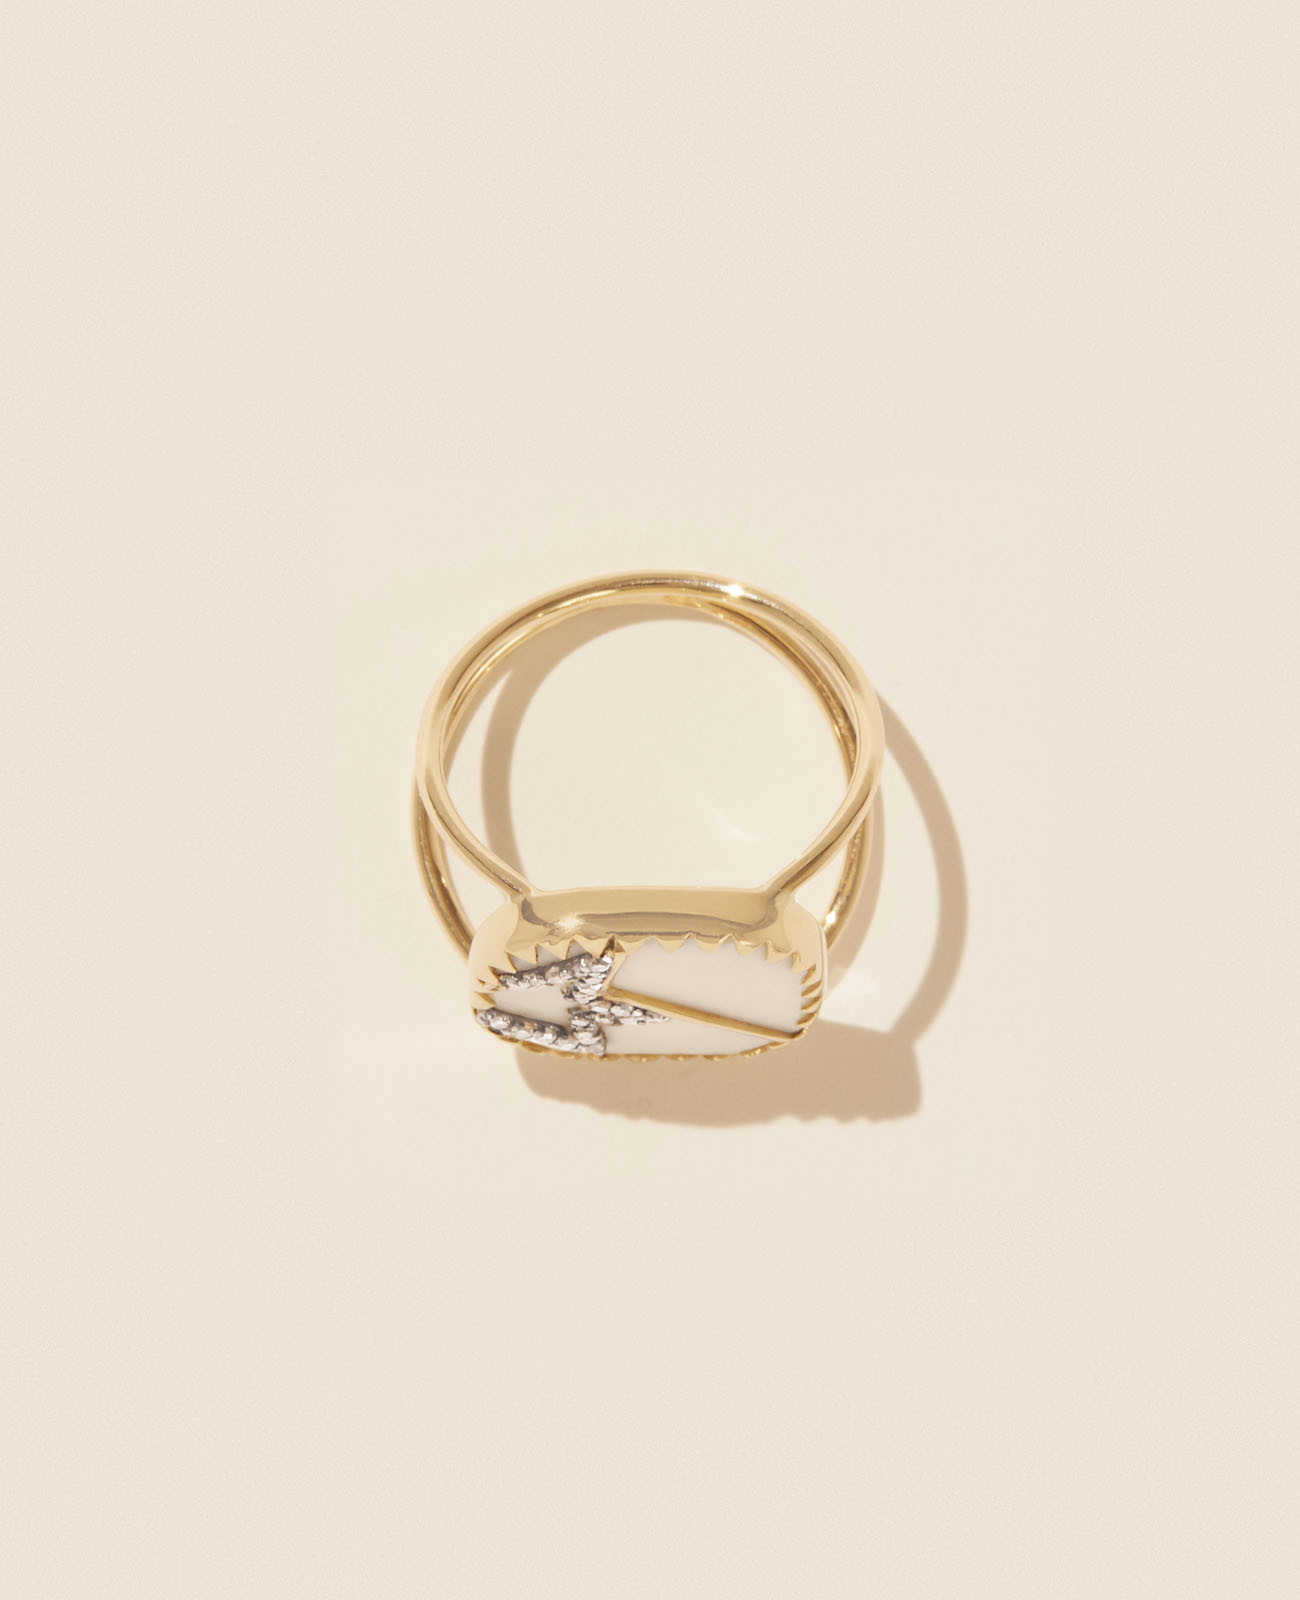 VARDA N°2 WHITE DIAMOND ring pascale monvoisin jewelry paris